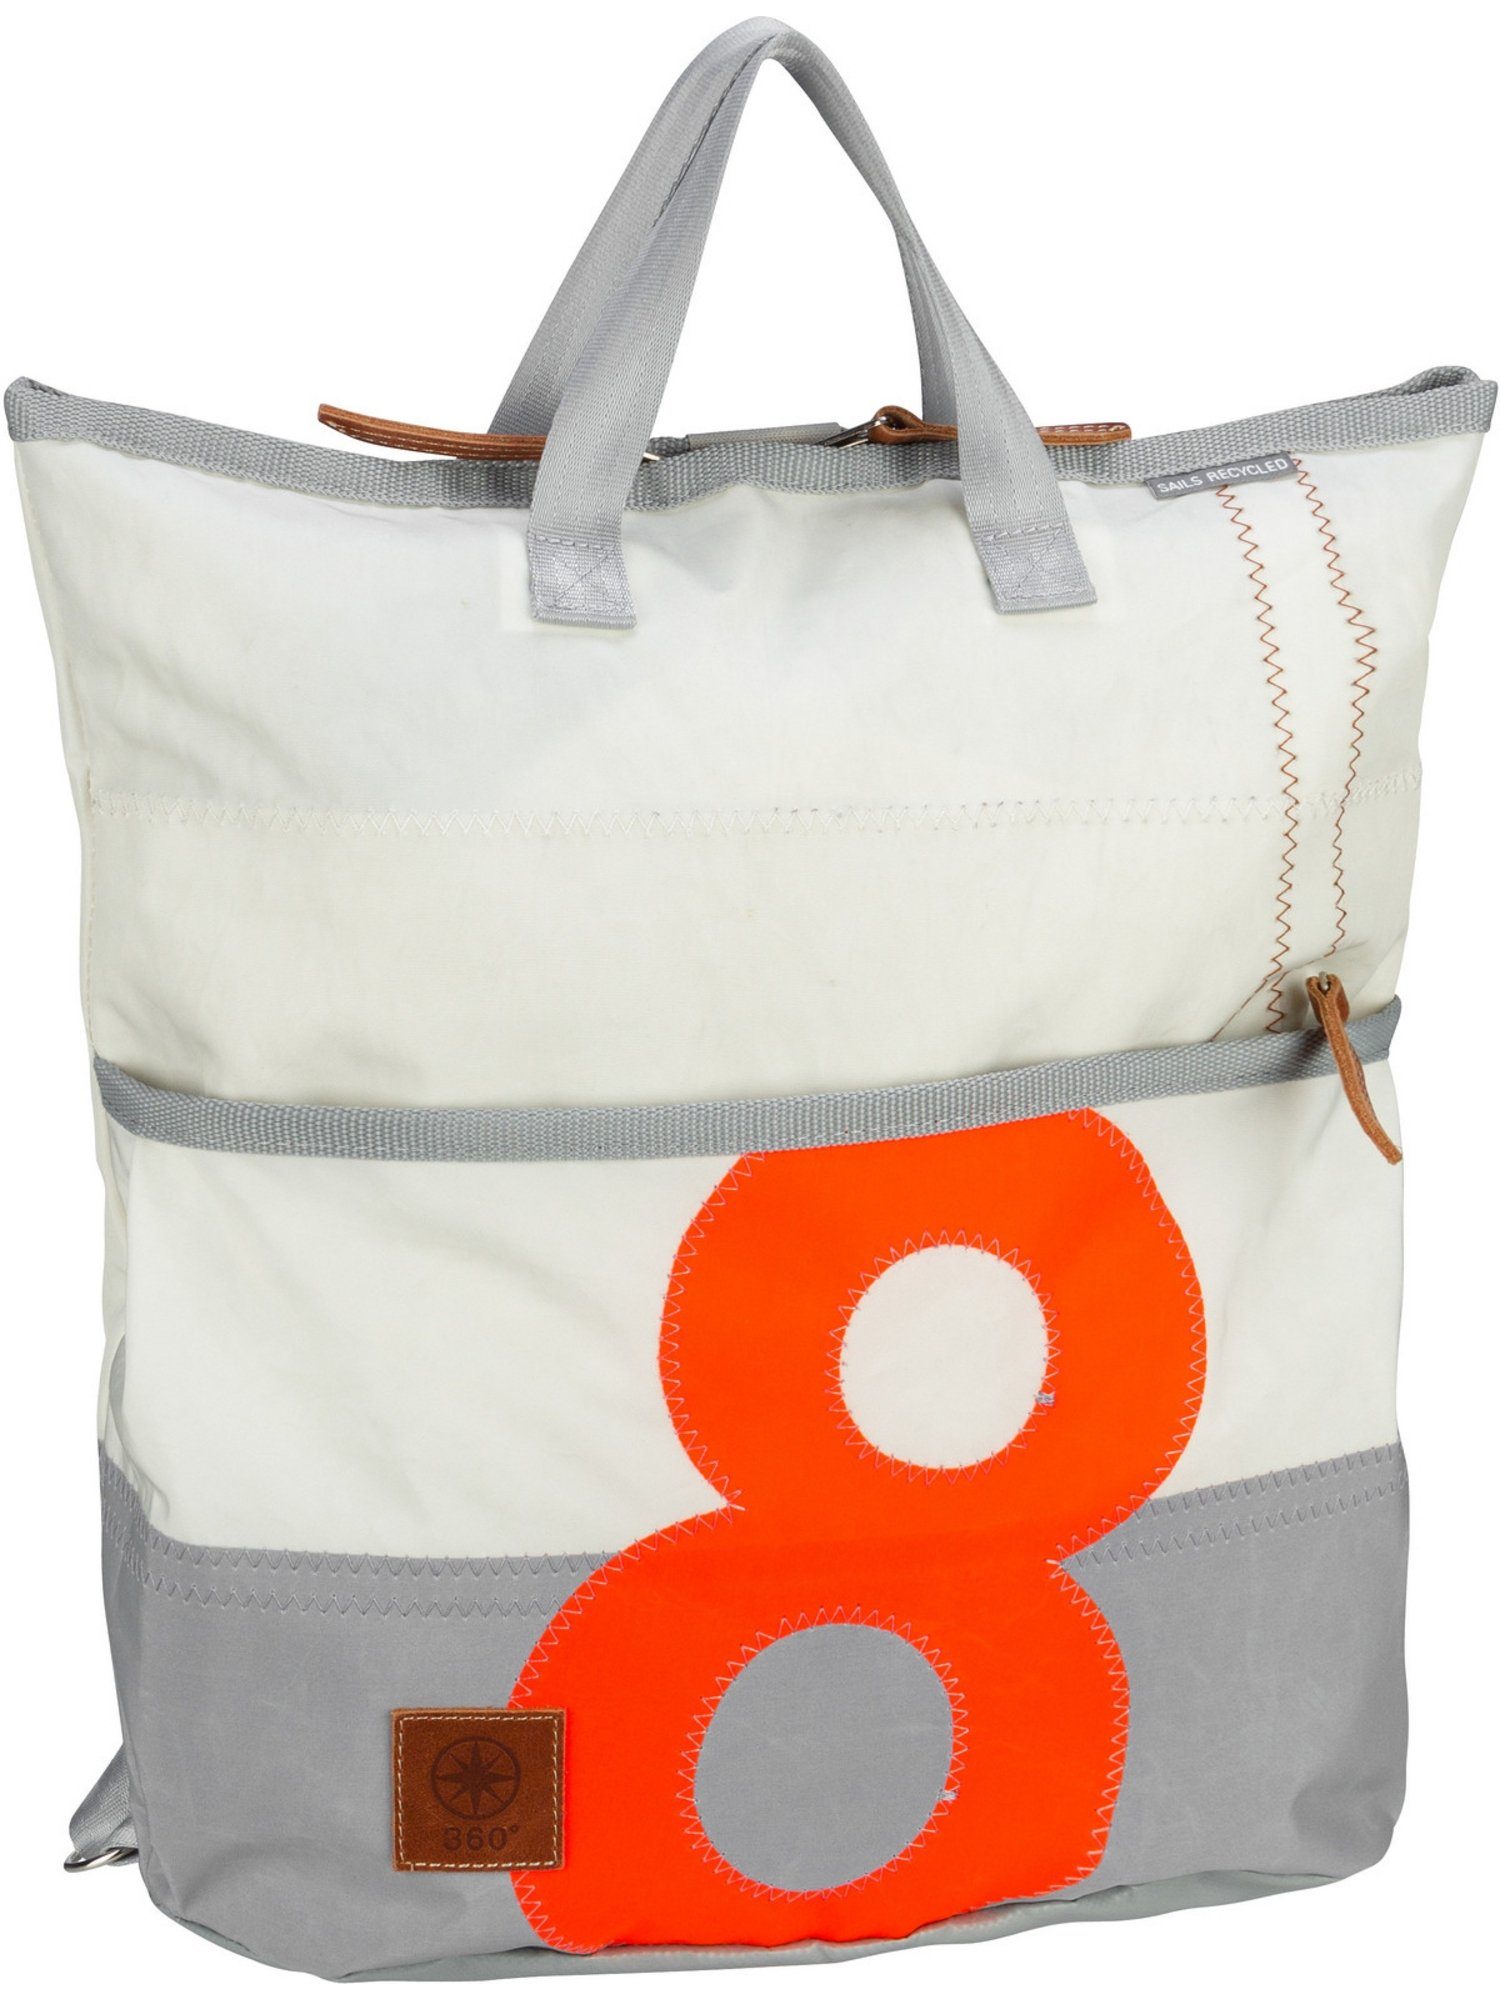 Rucksack mit Zahl Mini 360Grad oranger Ketsch Weiß/Grau